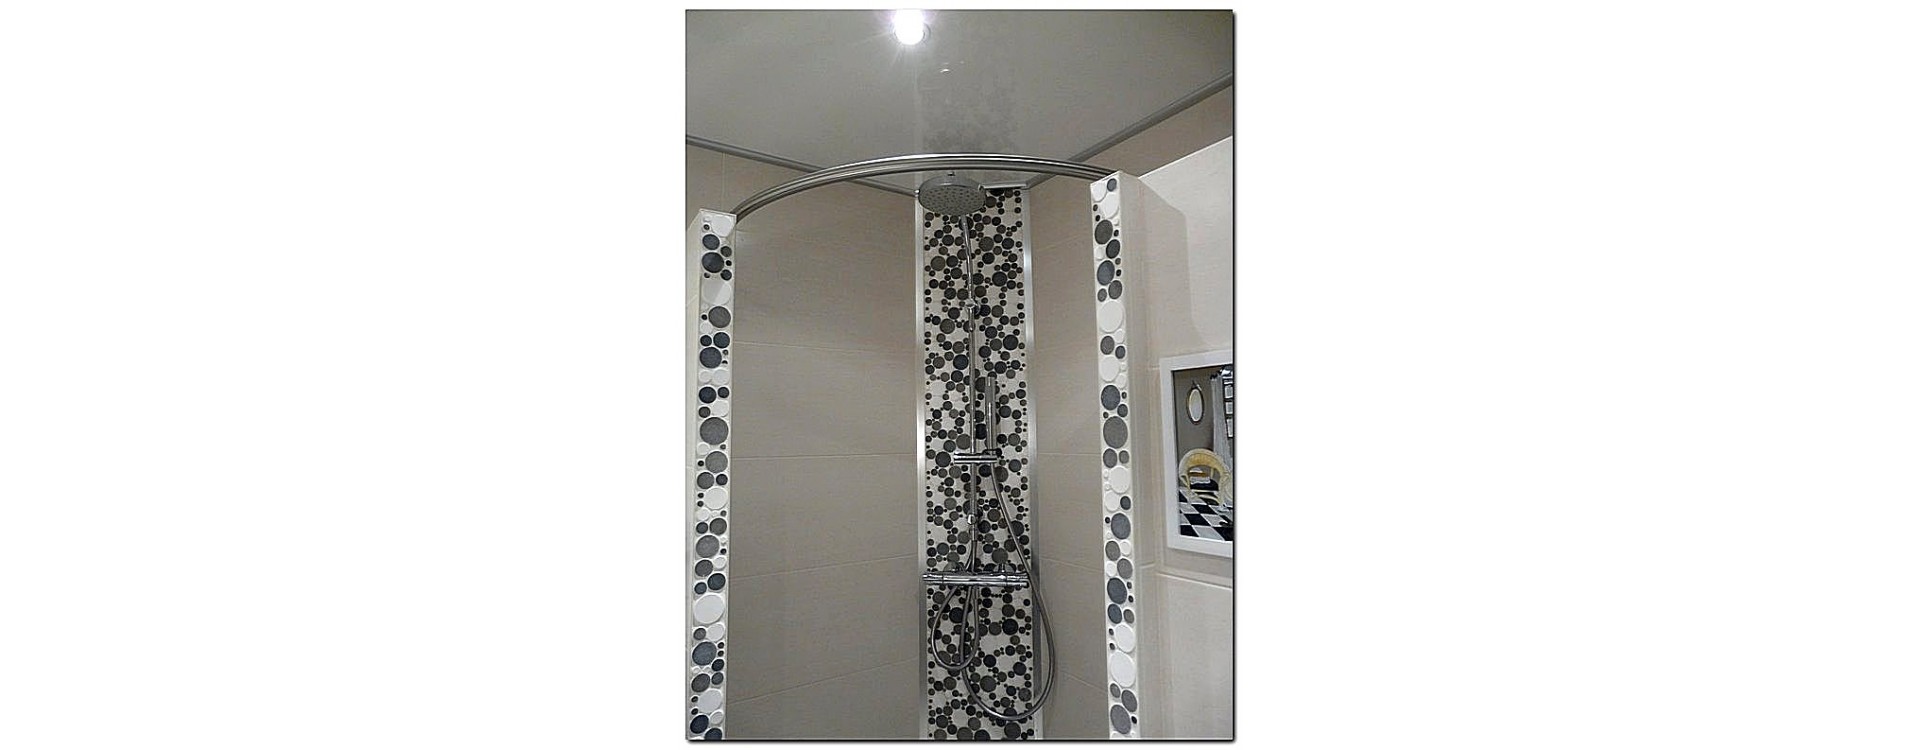 La barre à rideau de douche symétrique GalboBain : un design source d'inspiration